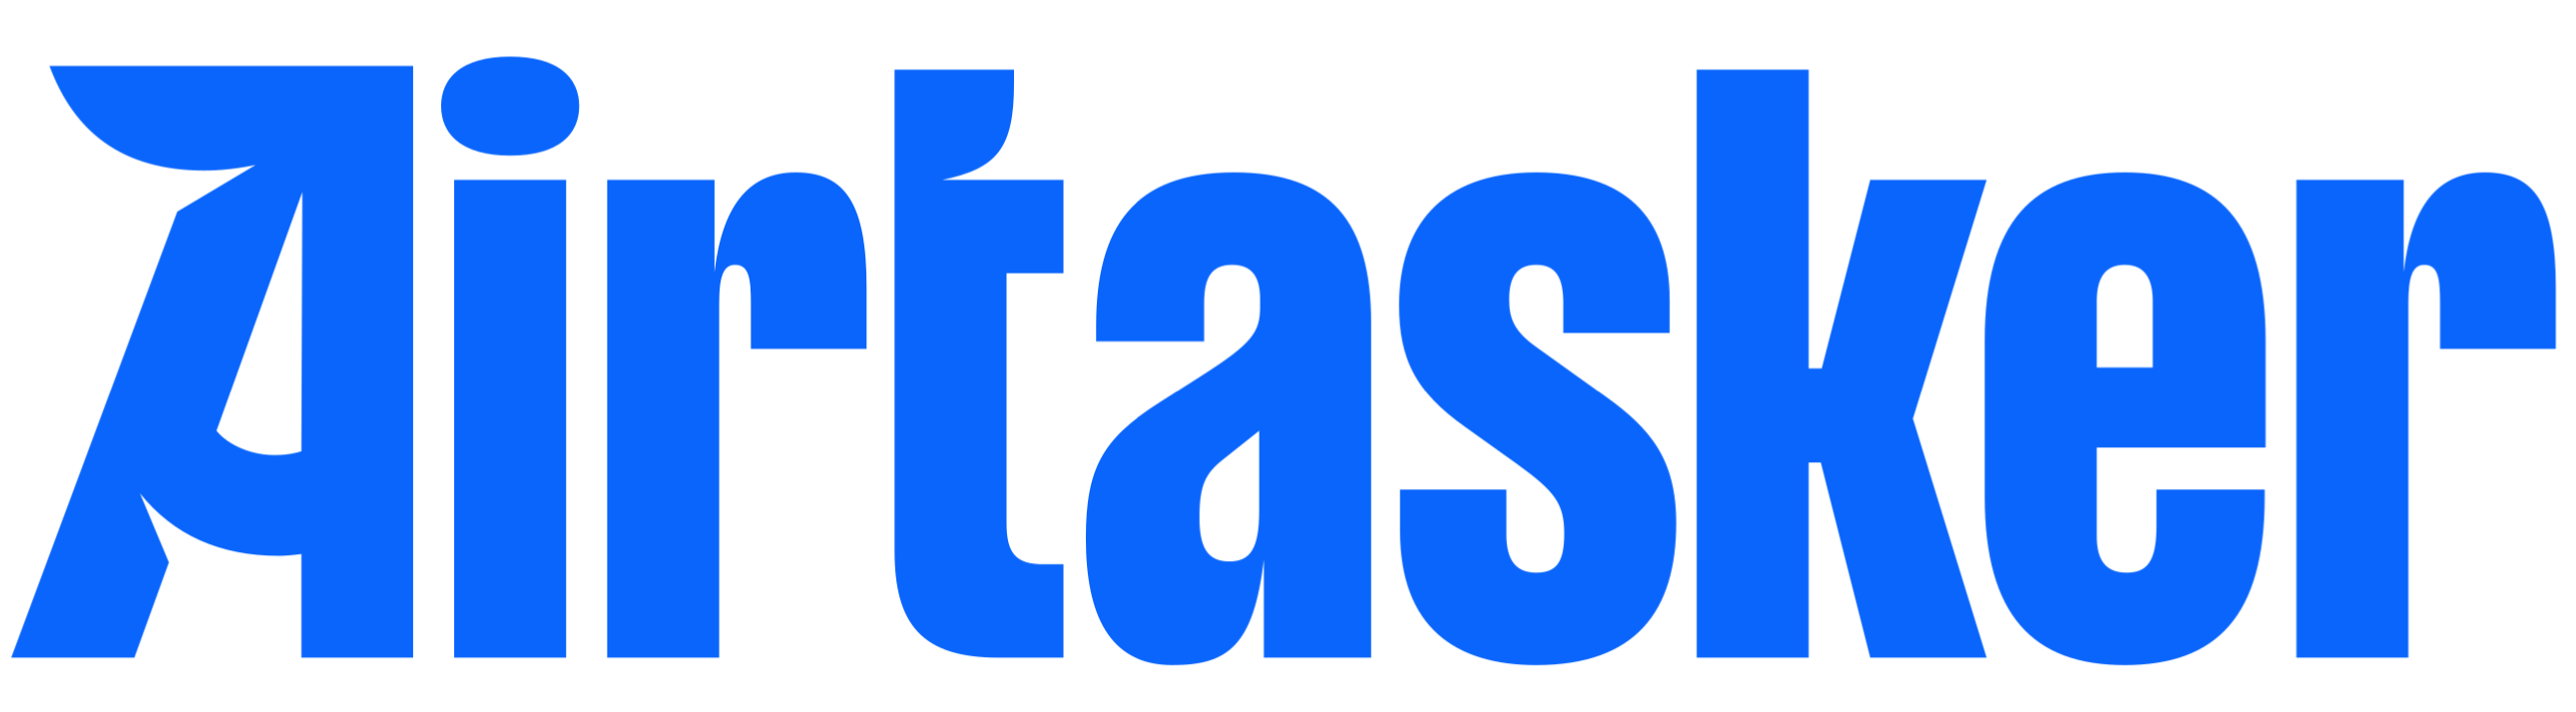 Airtasker blue logo